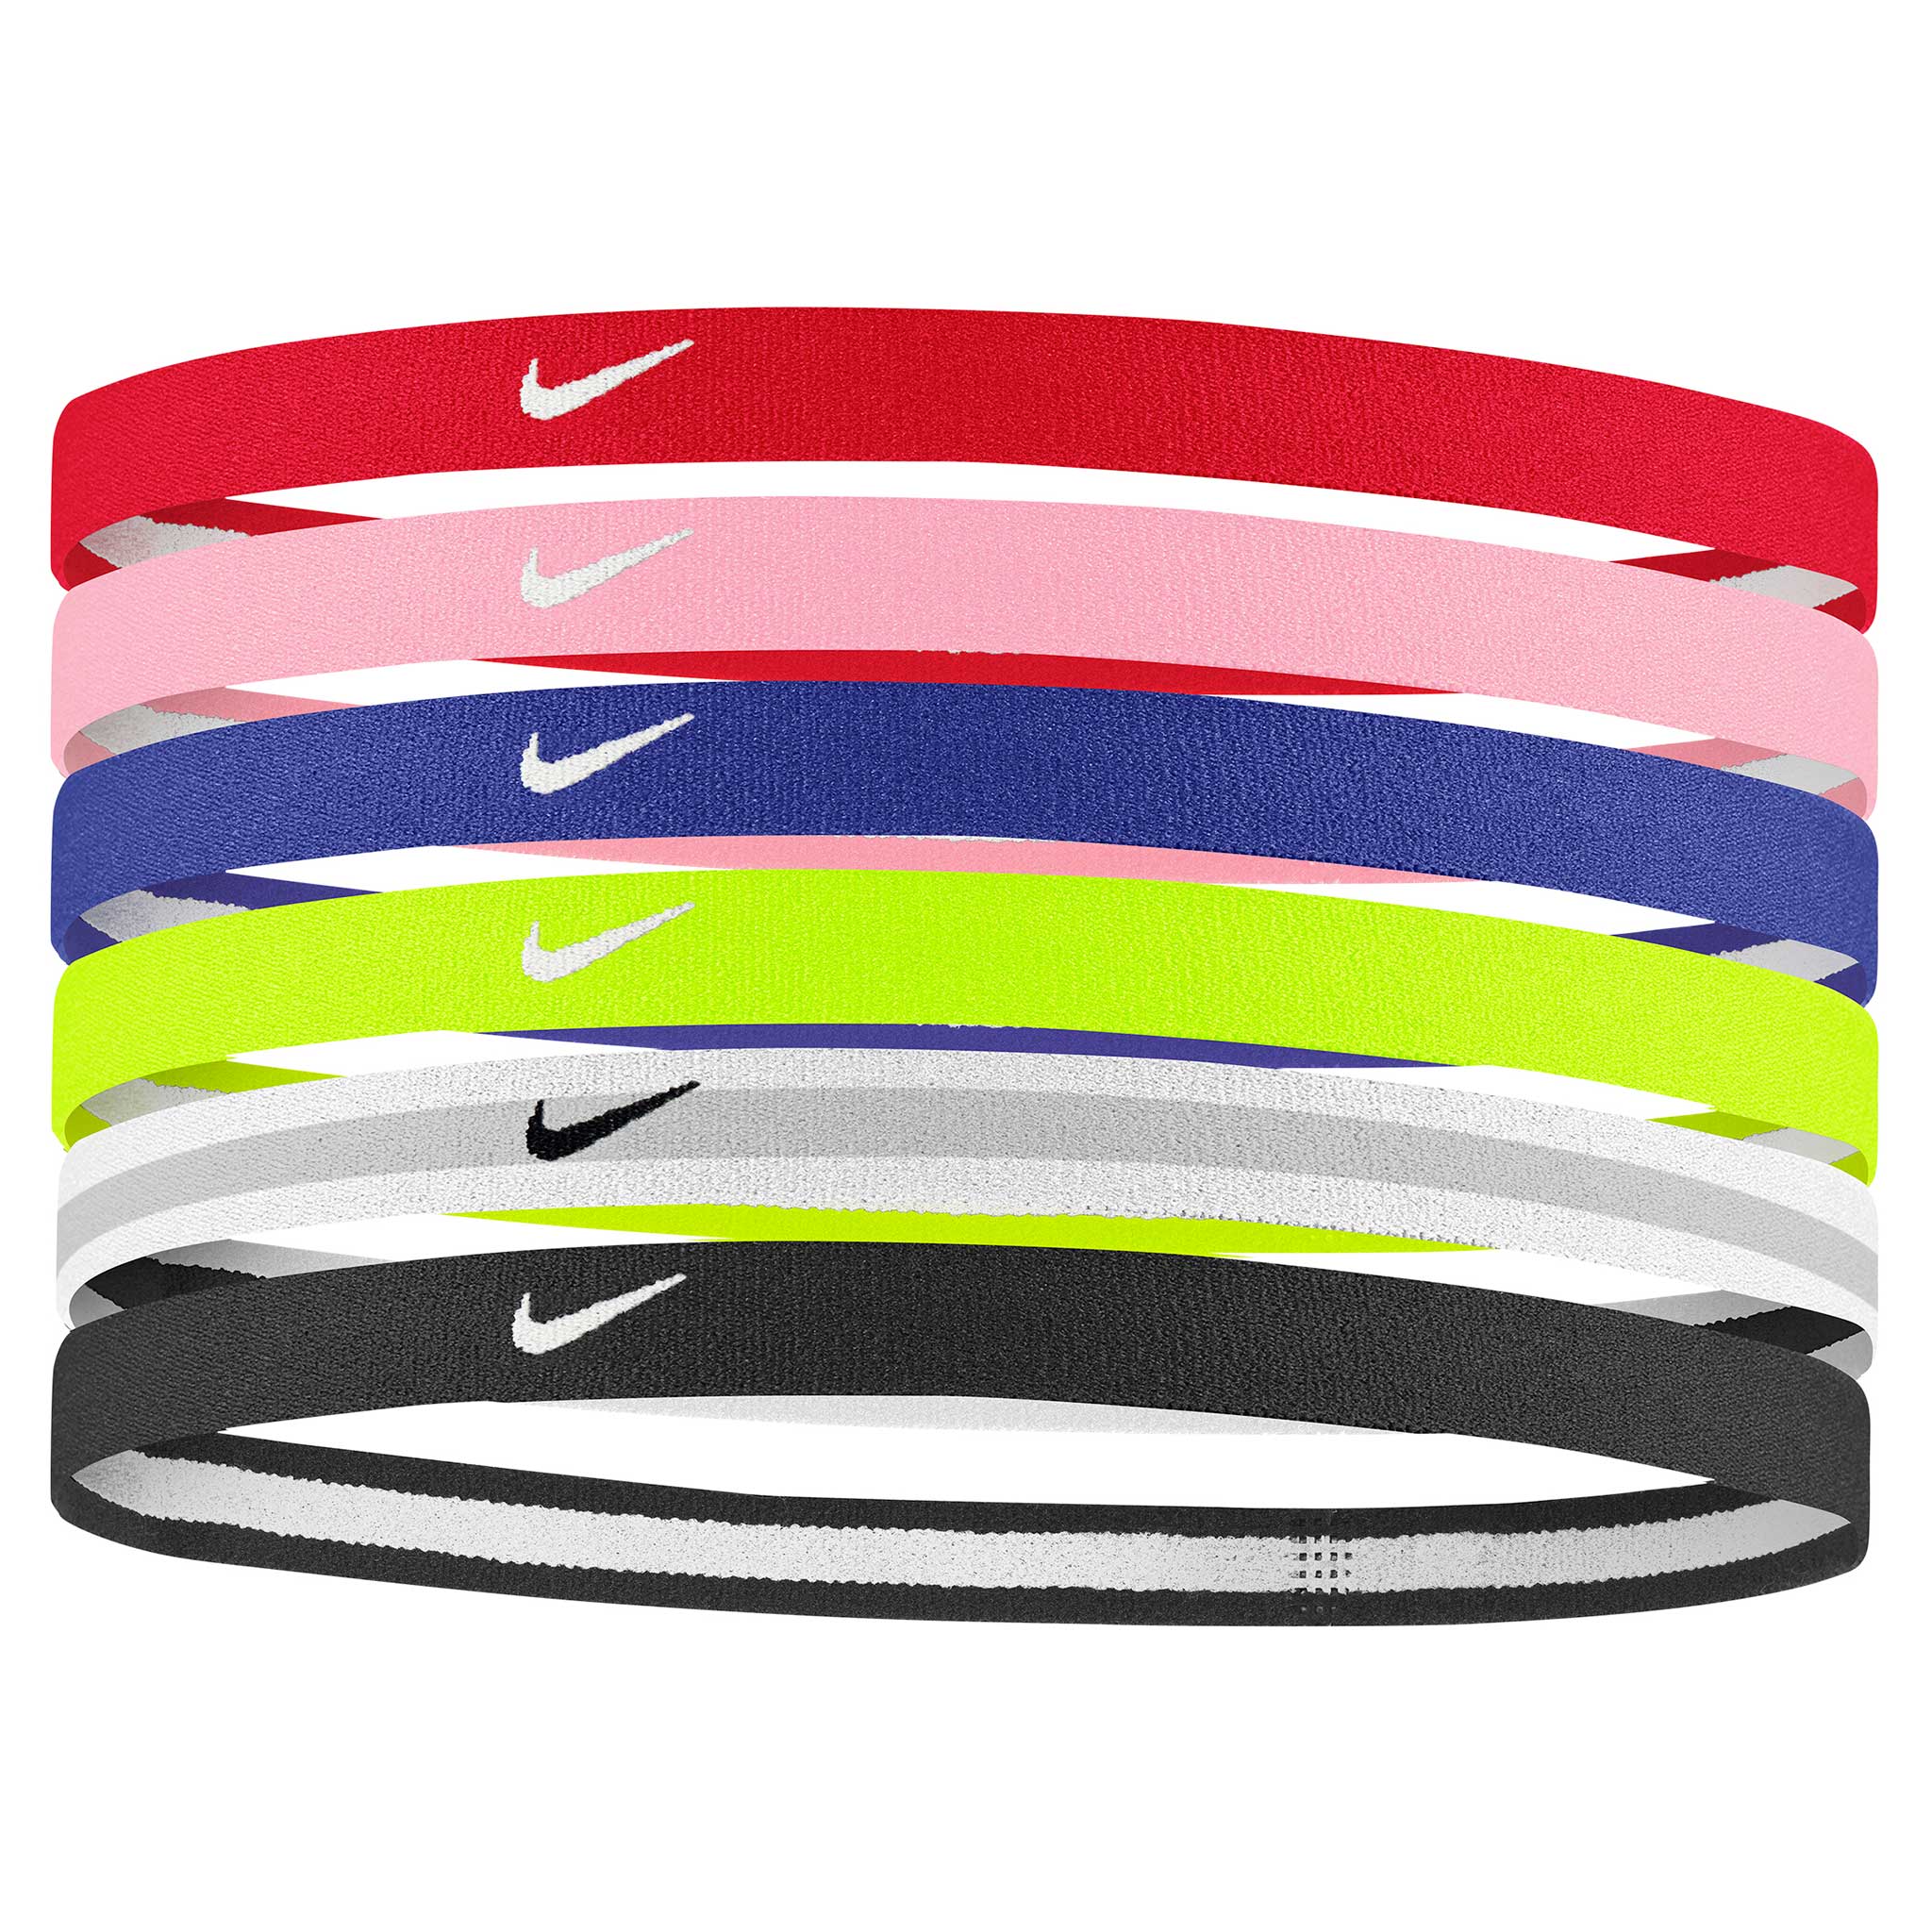 Les huit meilleurs bandeaux de sport Nike pour votre entraînement préféré.  Nike FR